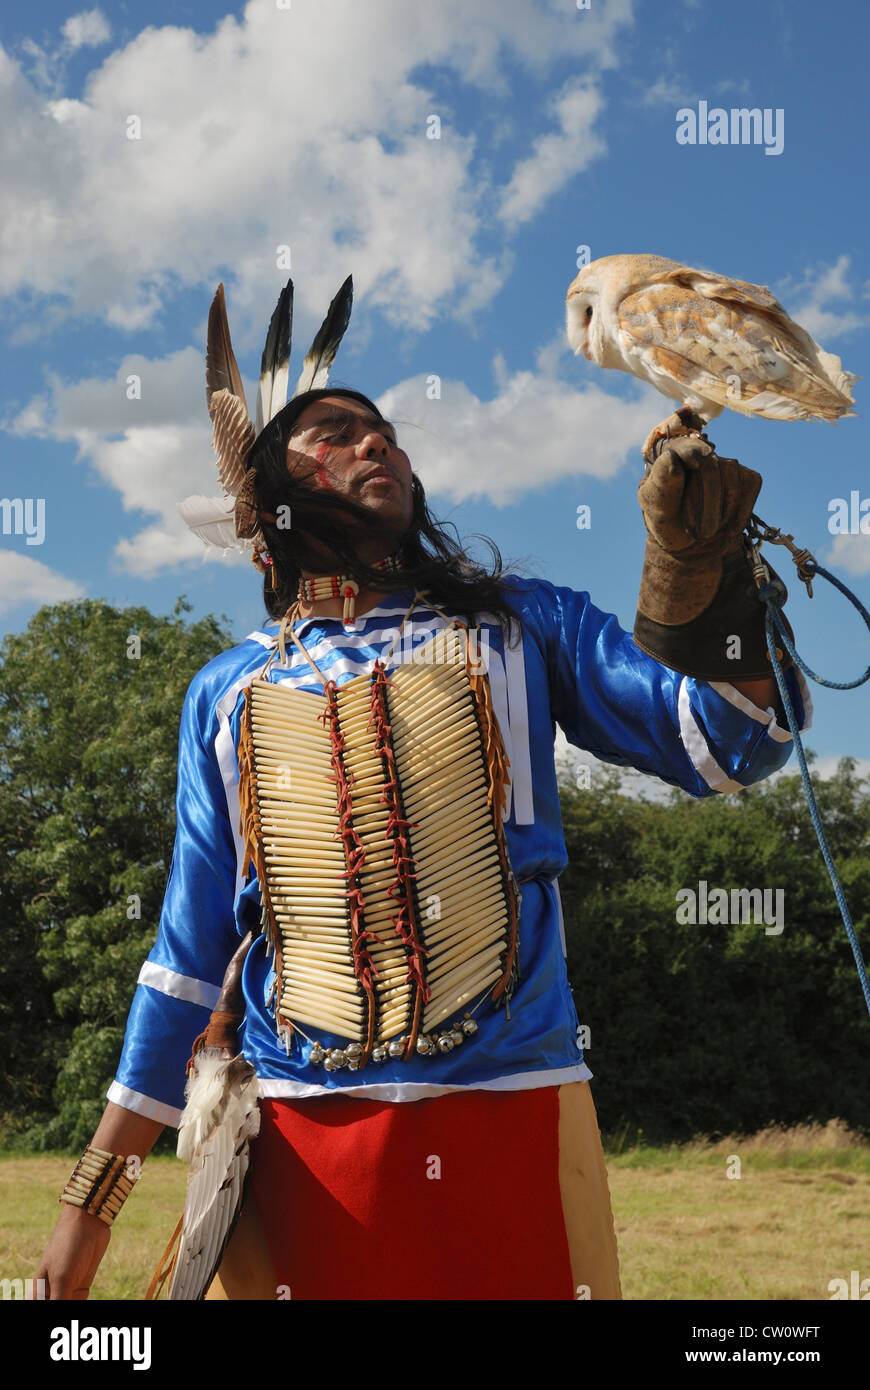 Ein Mann posiert im traditionellen Kleid Lakota (Sioux) mit einer Schleiereule. Stockfoto